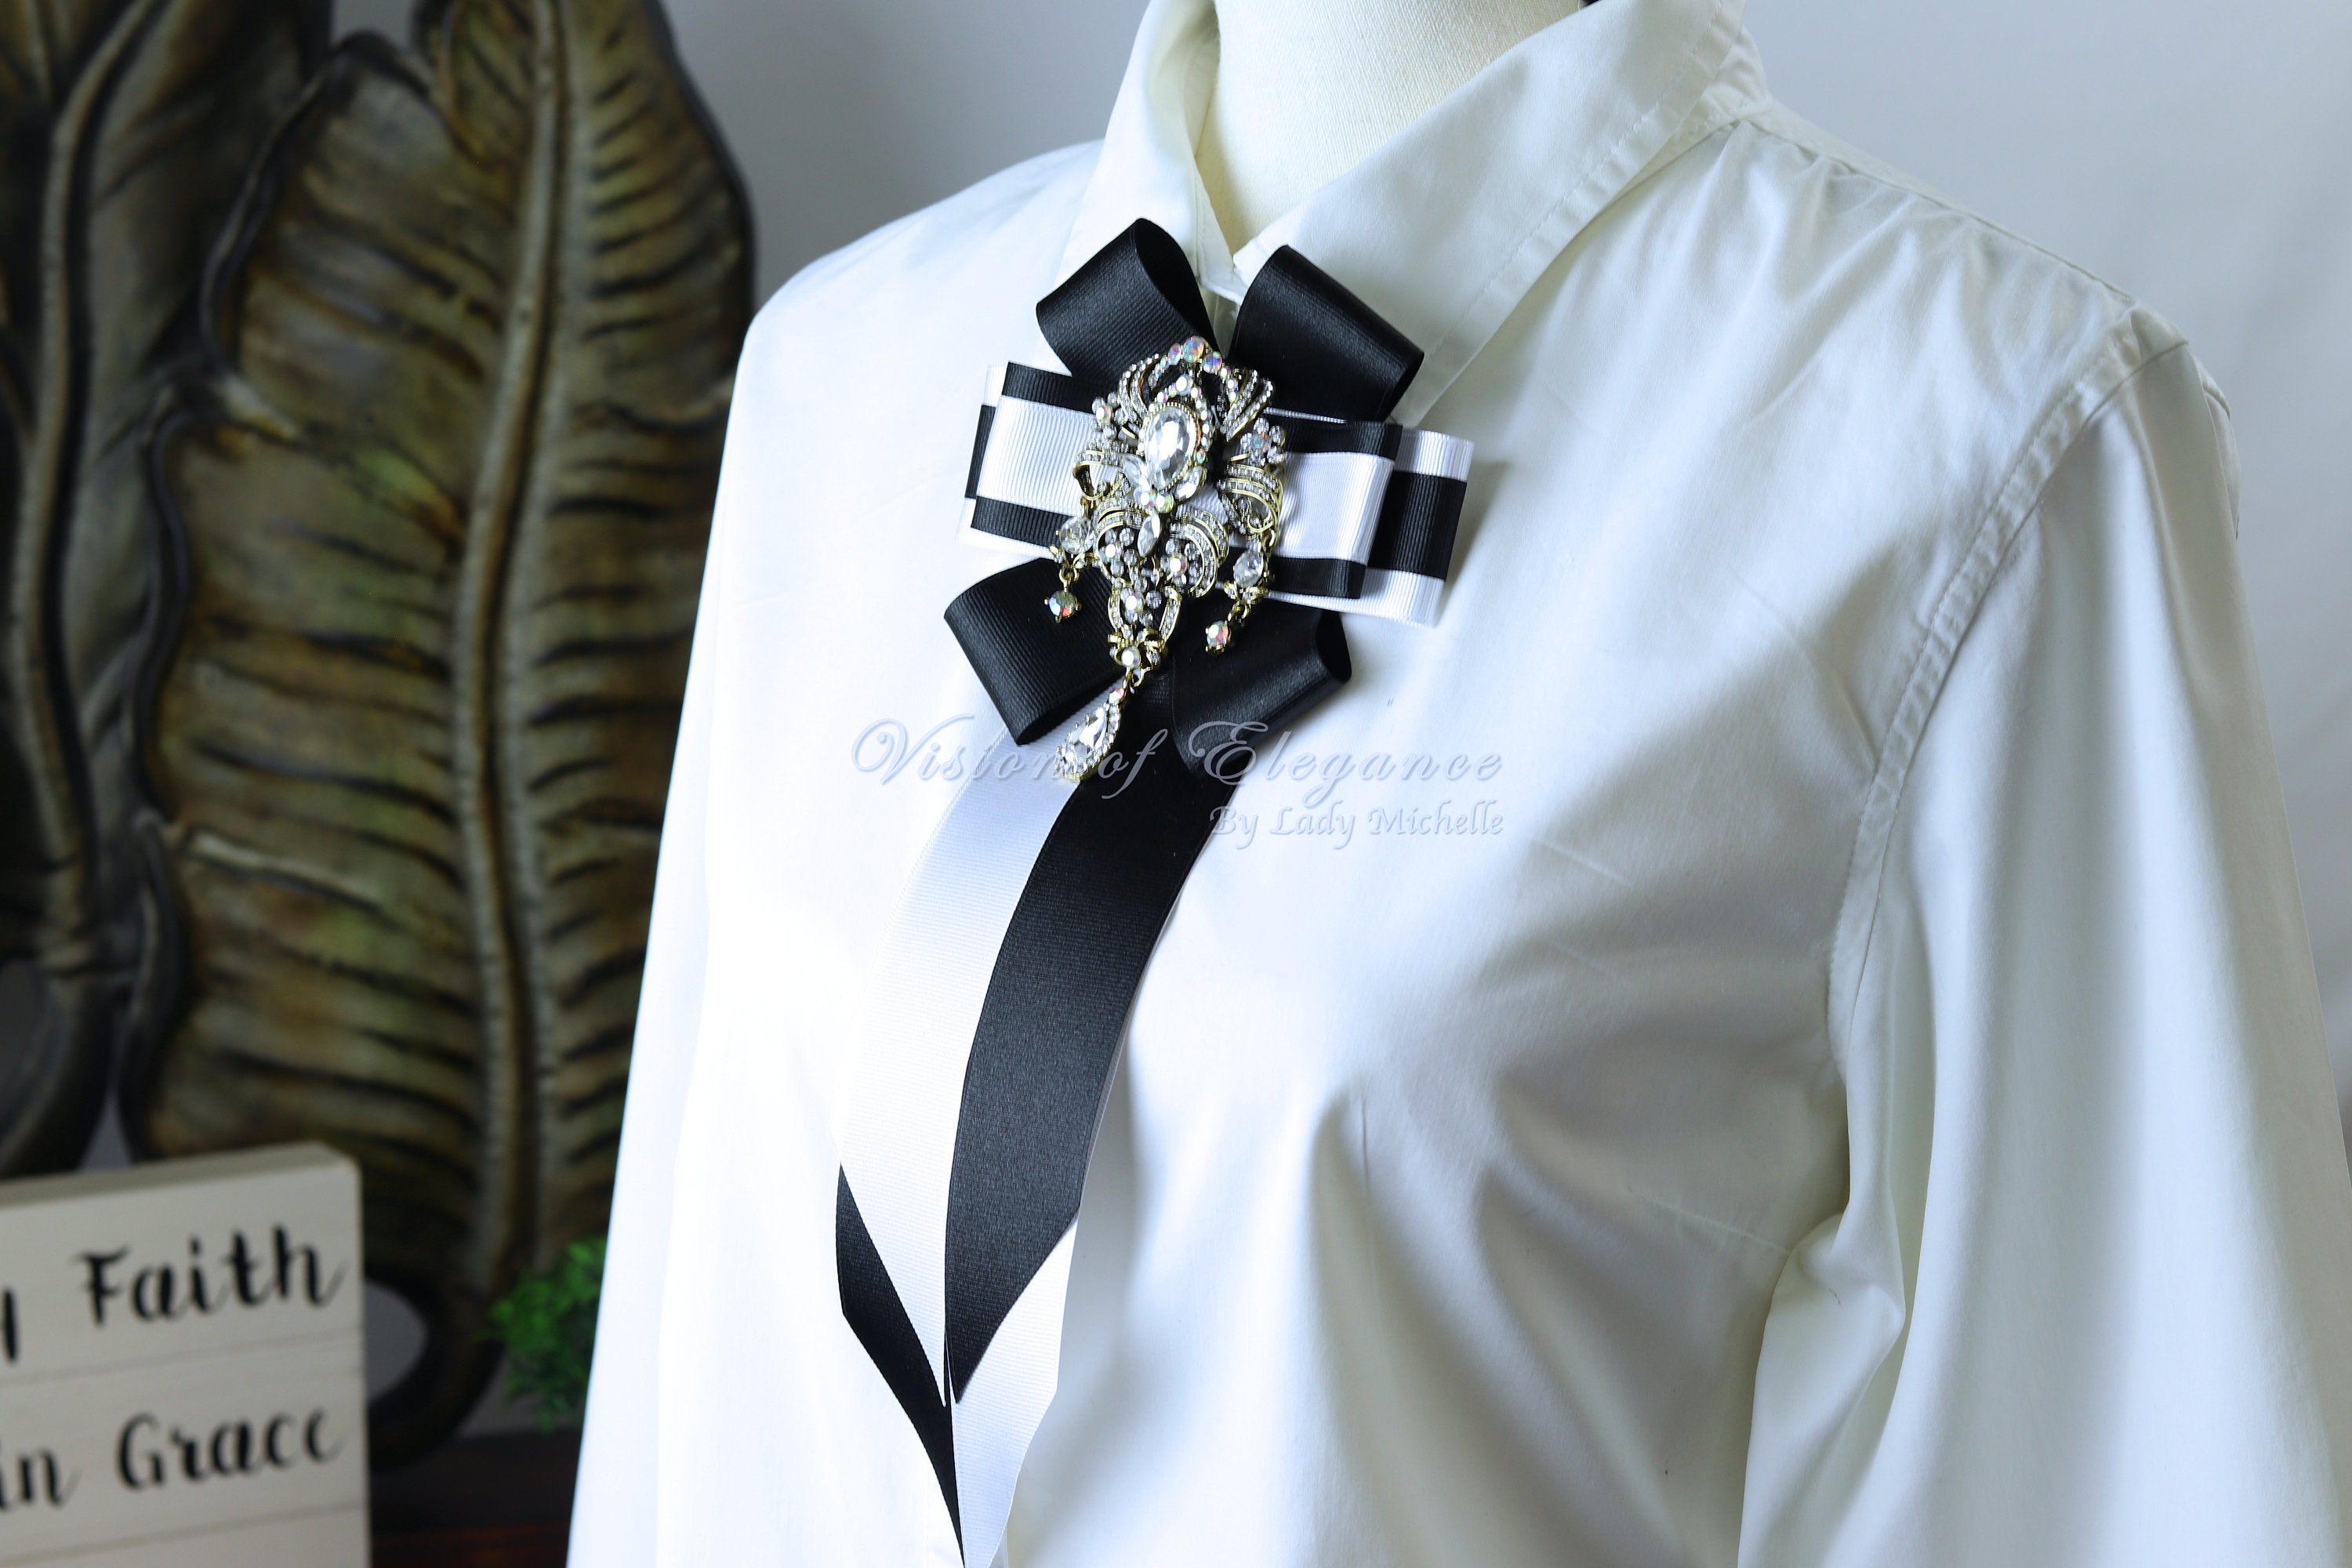 Black Bow Brooch Tie for Women. Halloween Brooch. Handmade Women